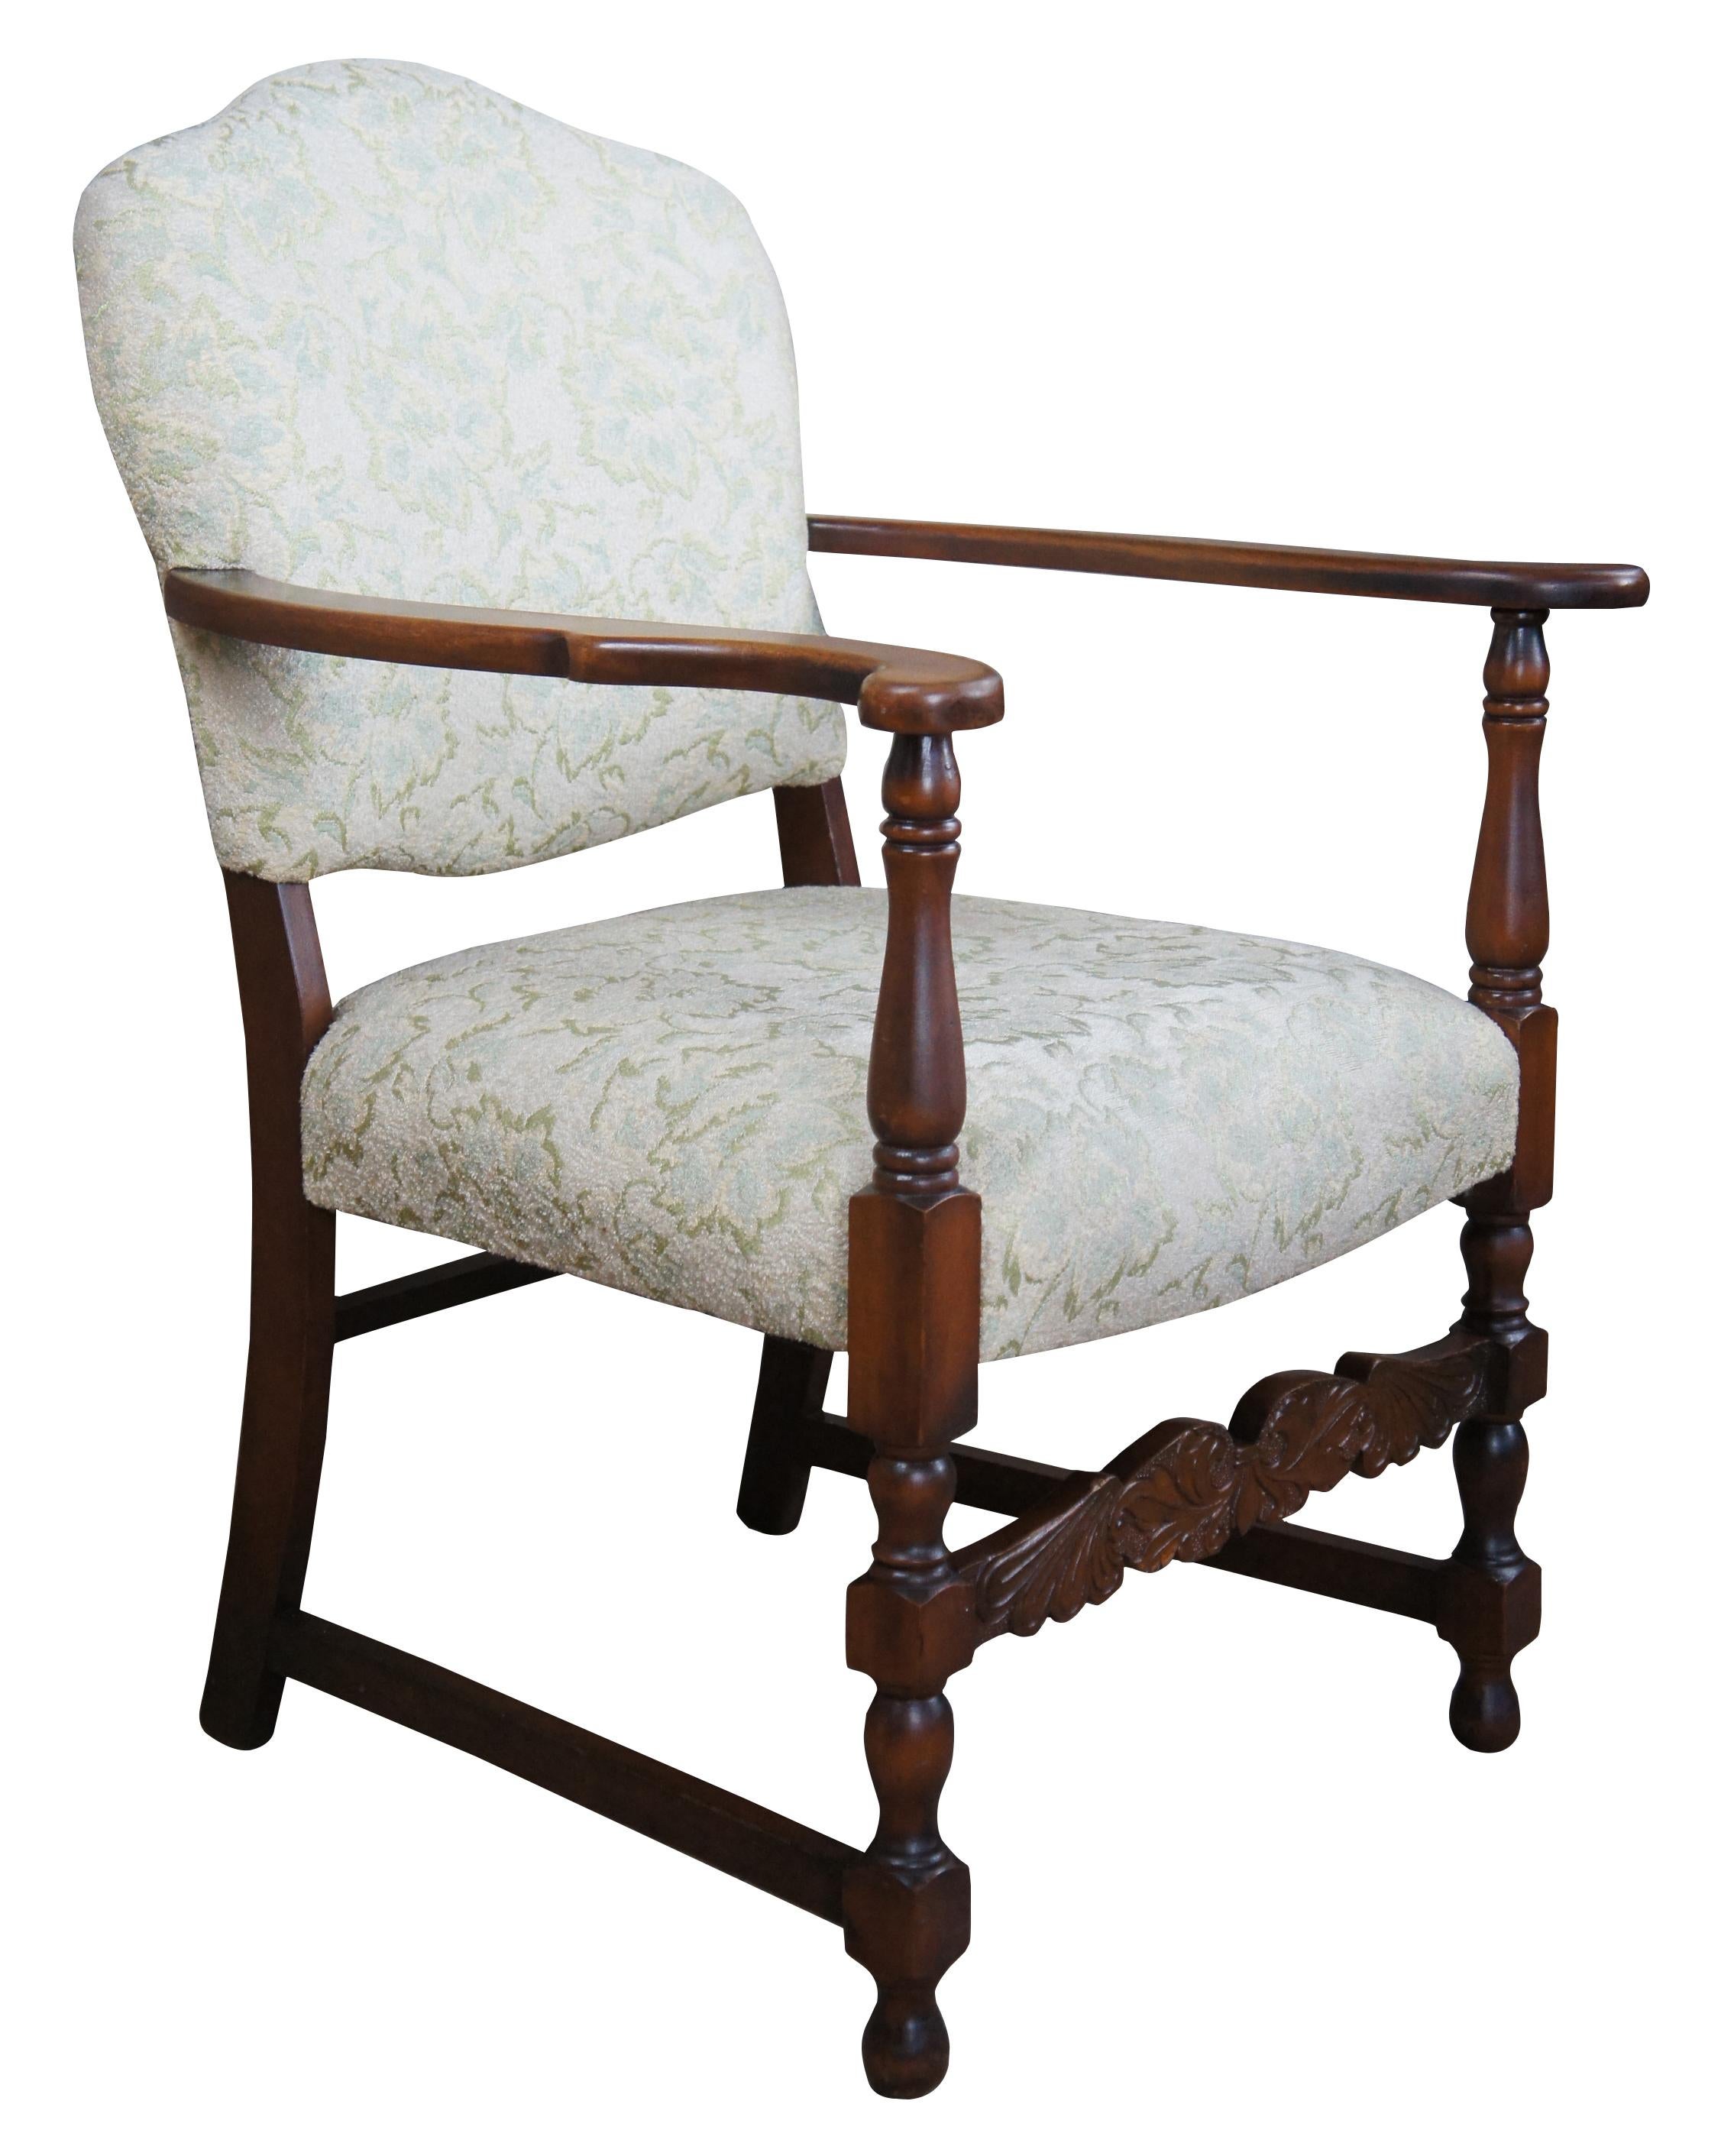 Fauteuil de style néo-espagnol du milieu du XXe siècle. Fabriqué en acajou, il présente des bras évasés, des supports tournés et un brancard sculpté. La chaise est tapissée d'un motif floral sur l'assise et le dossier.